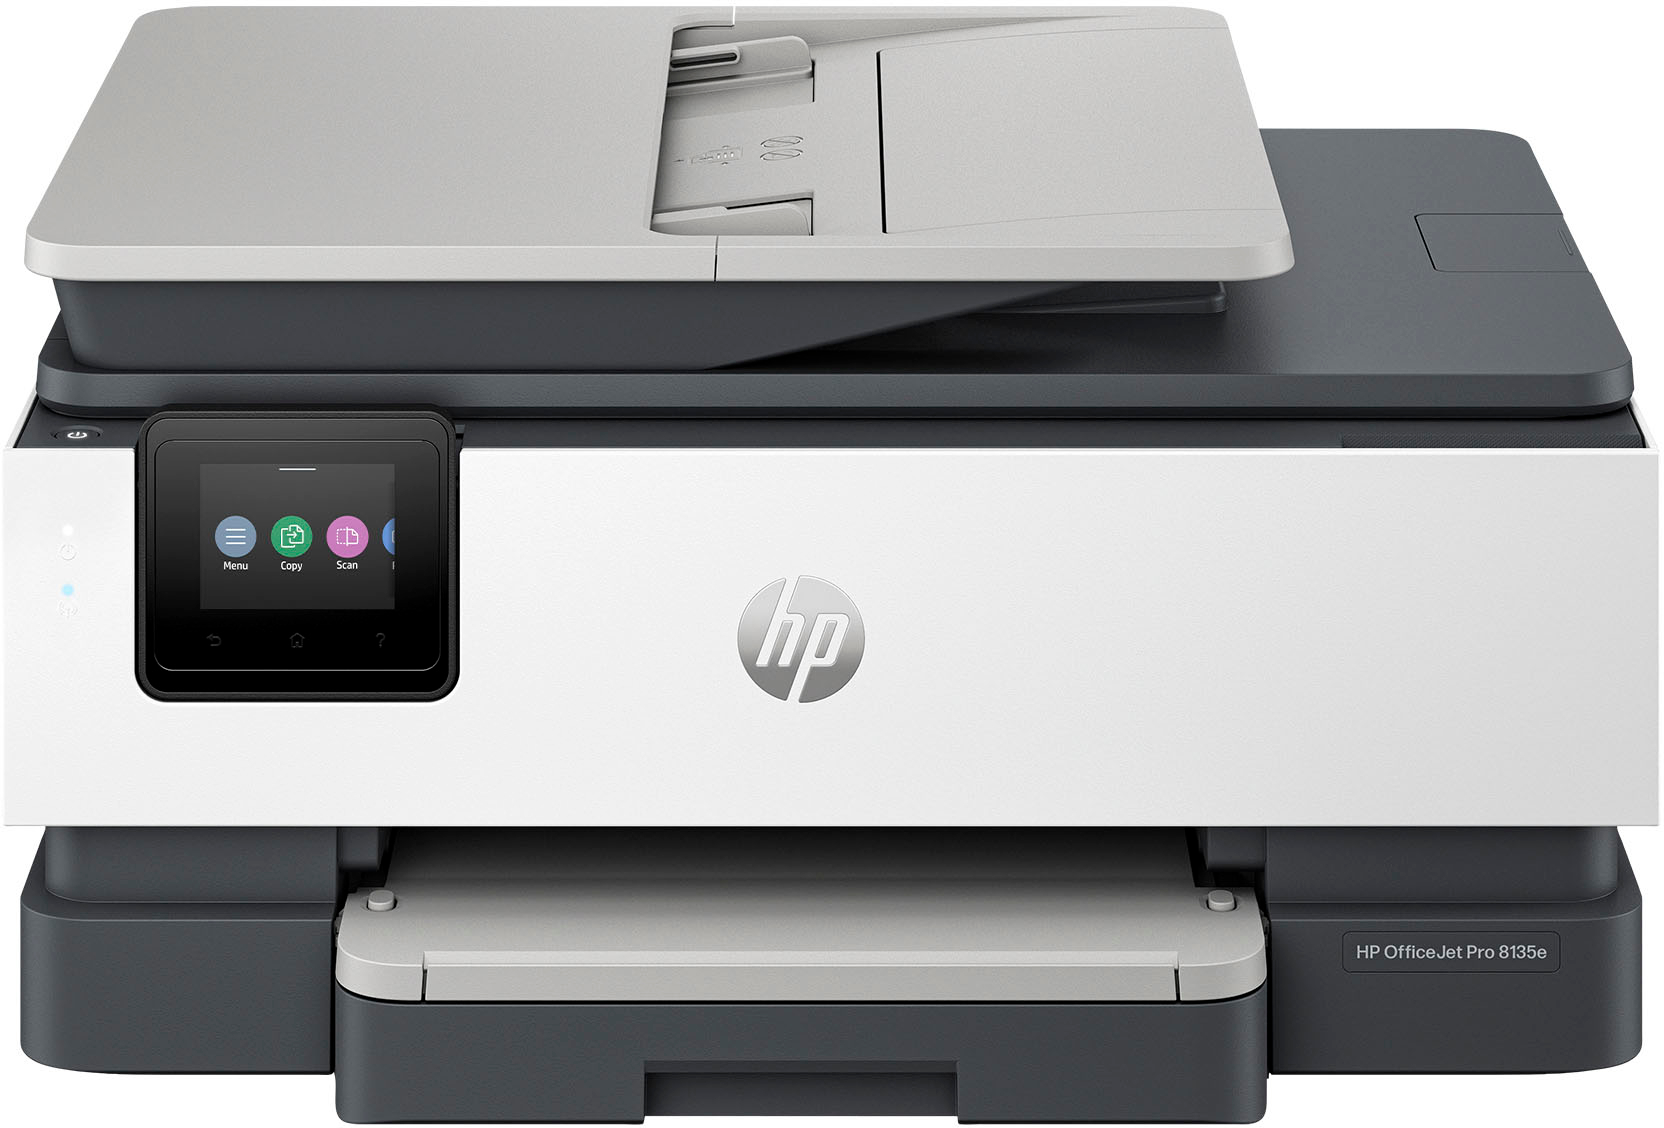 Buy HP Printer Paper, 8.5 x 11 Paper, ColorPrinting 24 lb